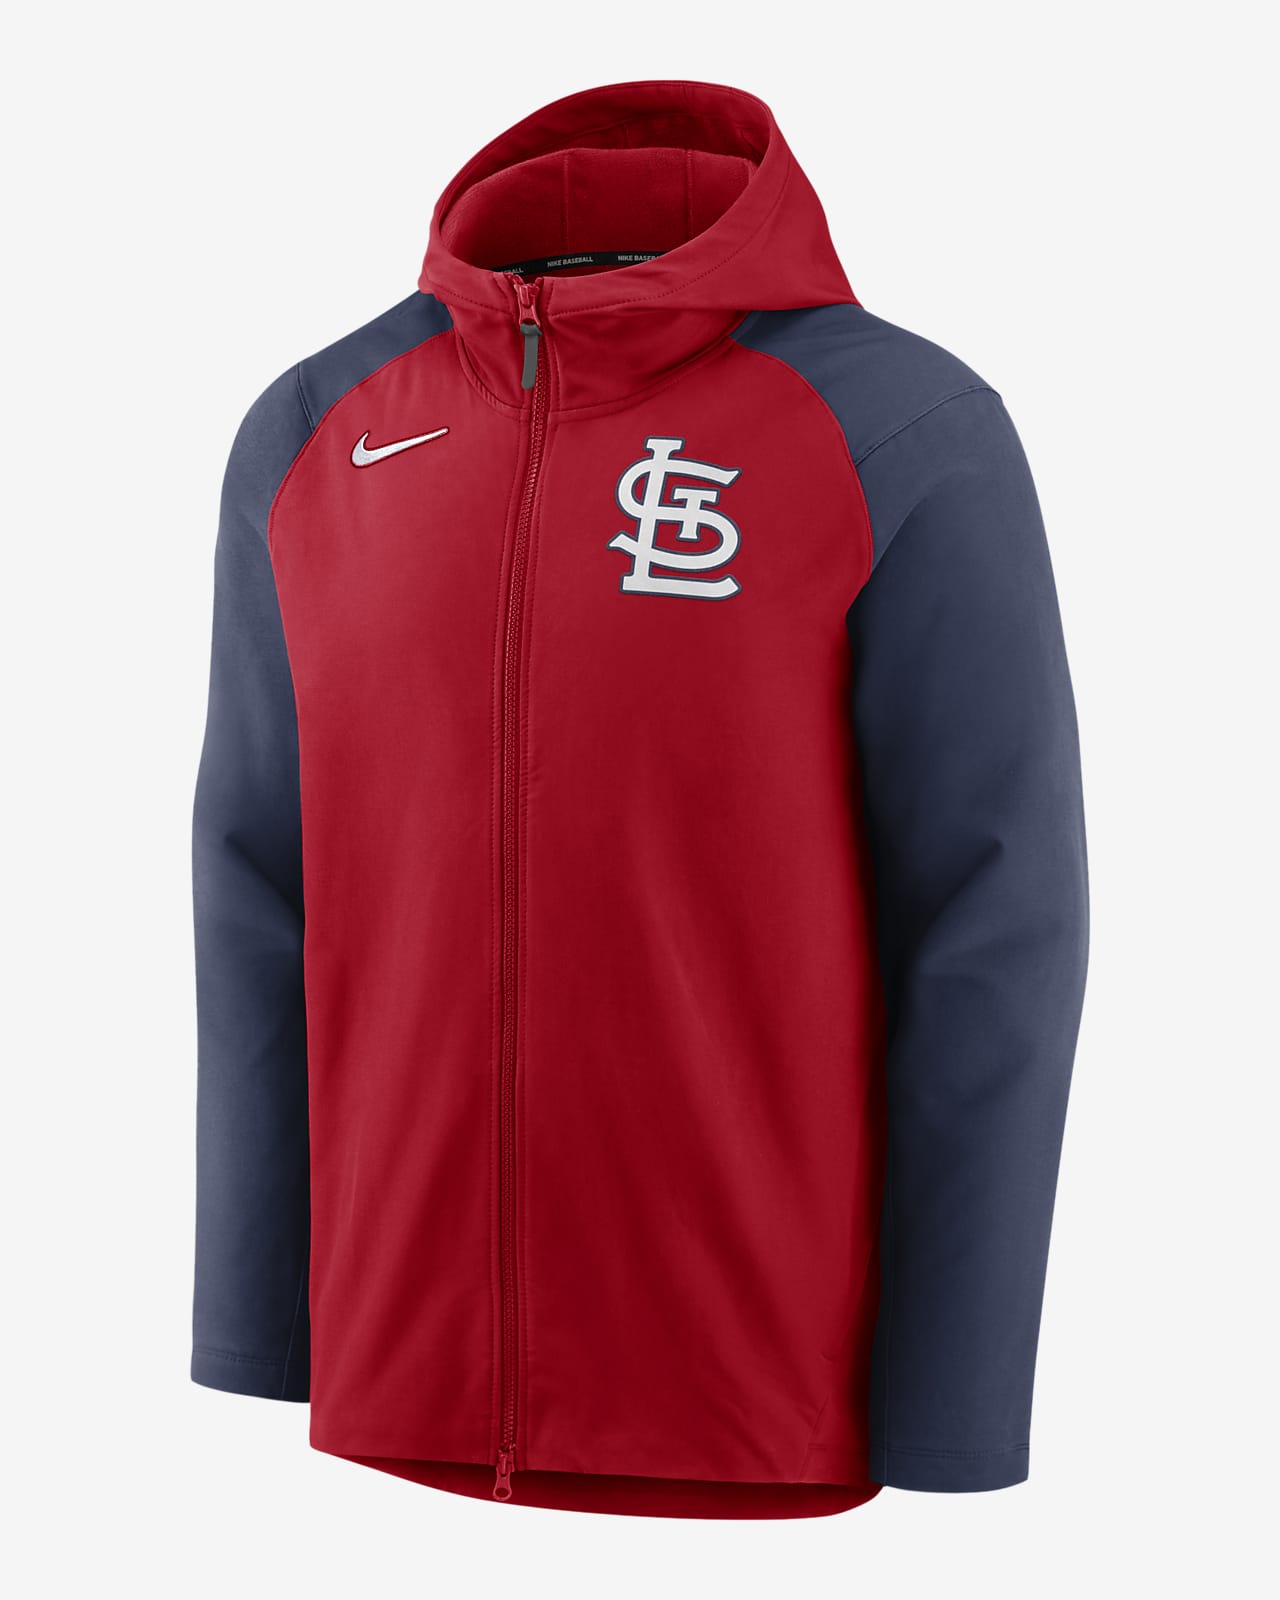 St. Louis Cardinals Nike Therma Hoodie - Mens